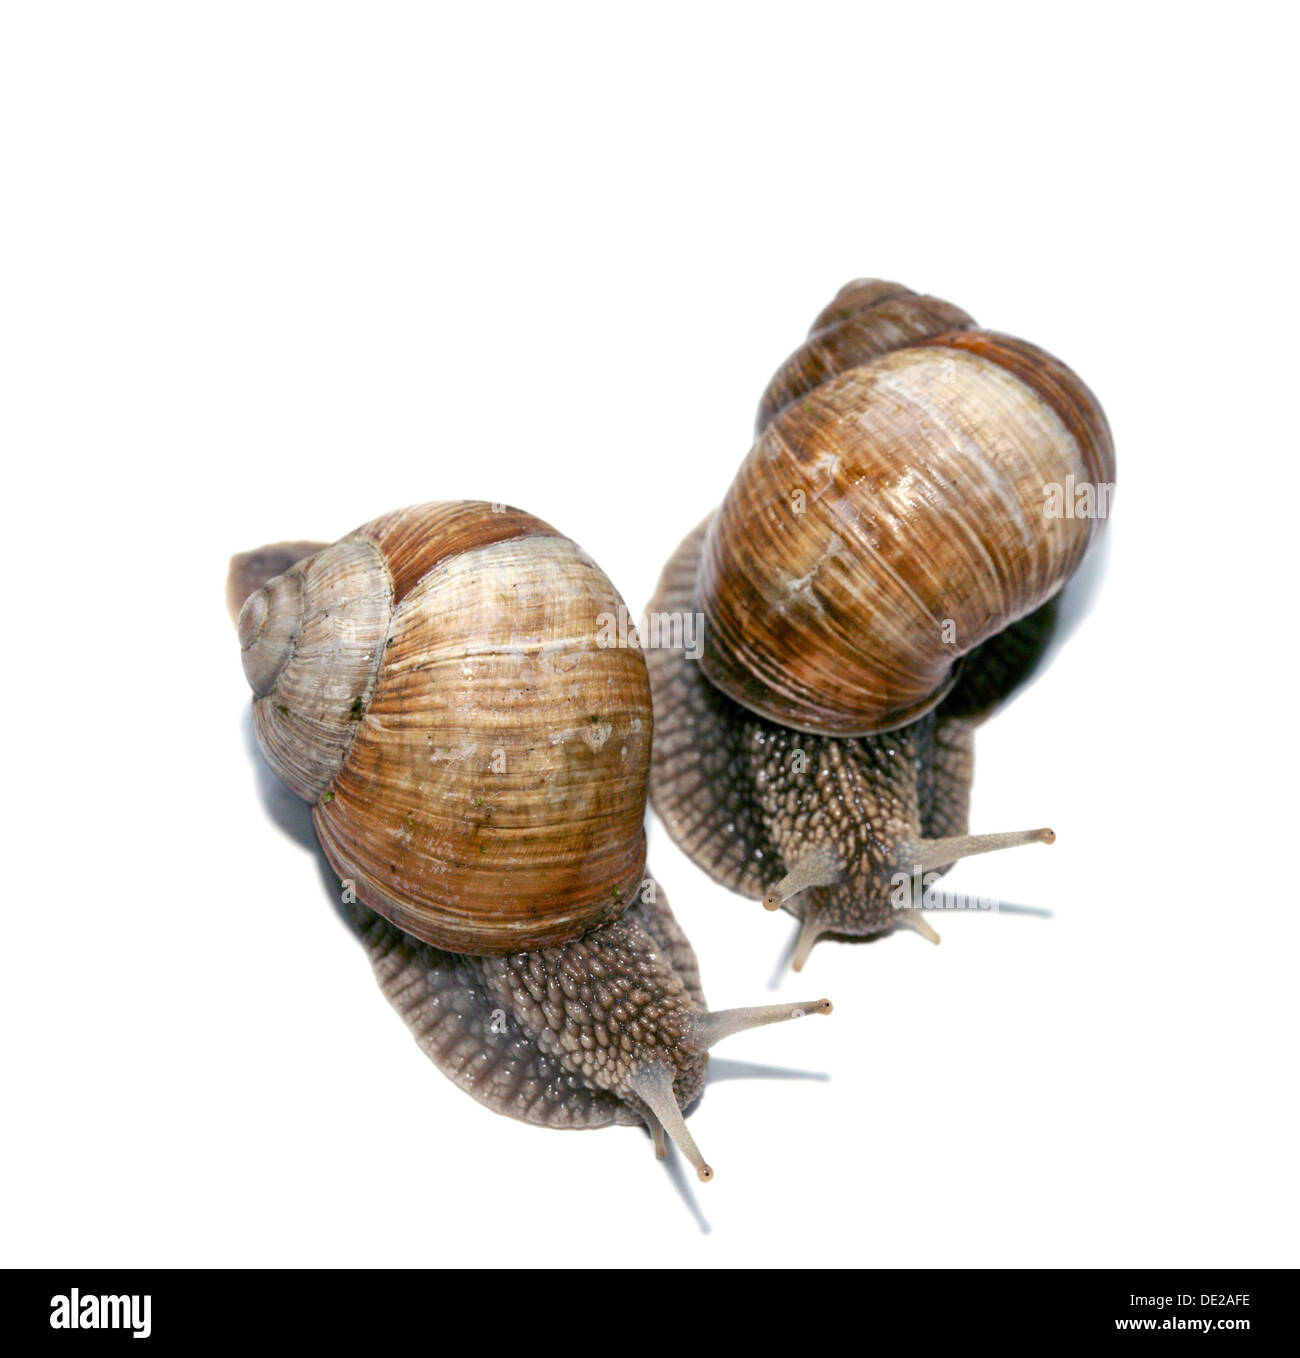 Zwei Burgunder Schnecken, römische Schnecken, essbare Schnecken oder Schnecken (Helix Pomatia) Stockfoto